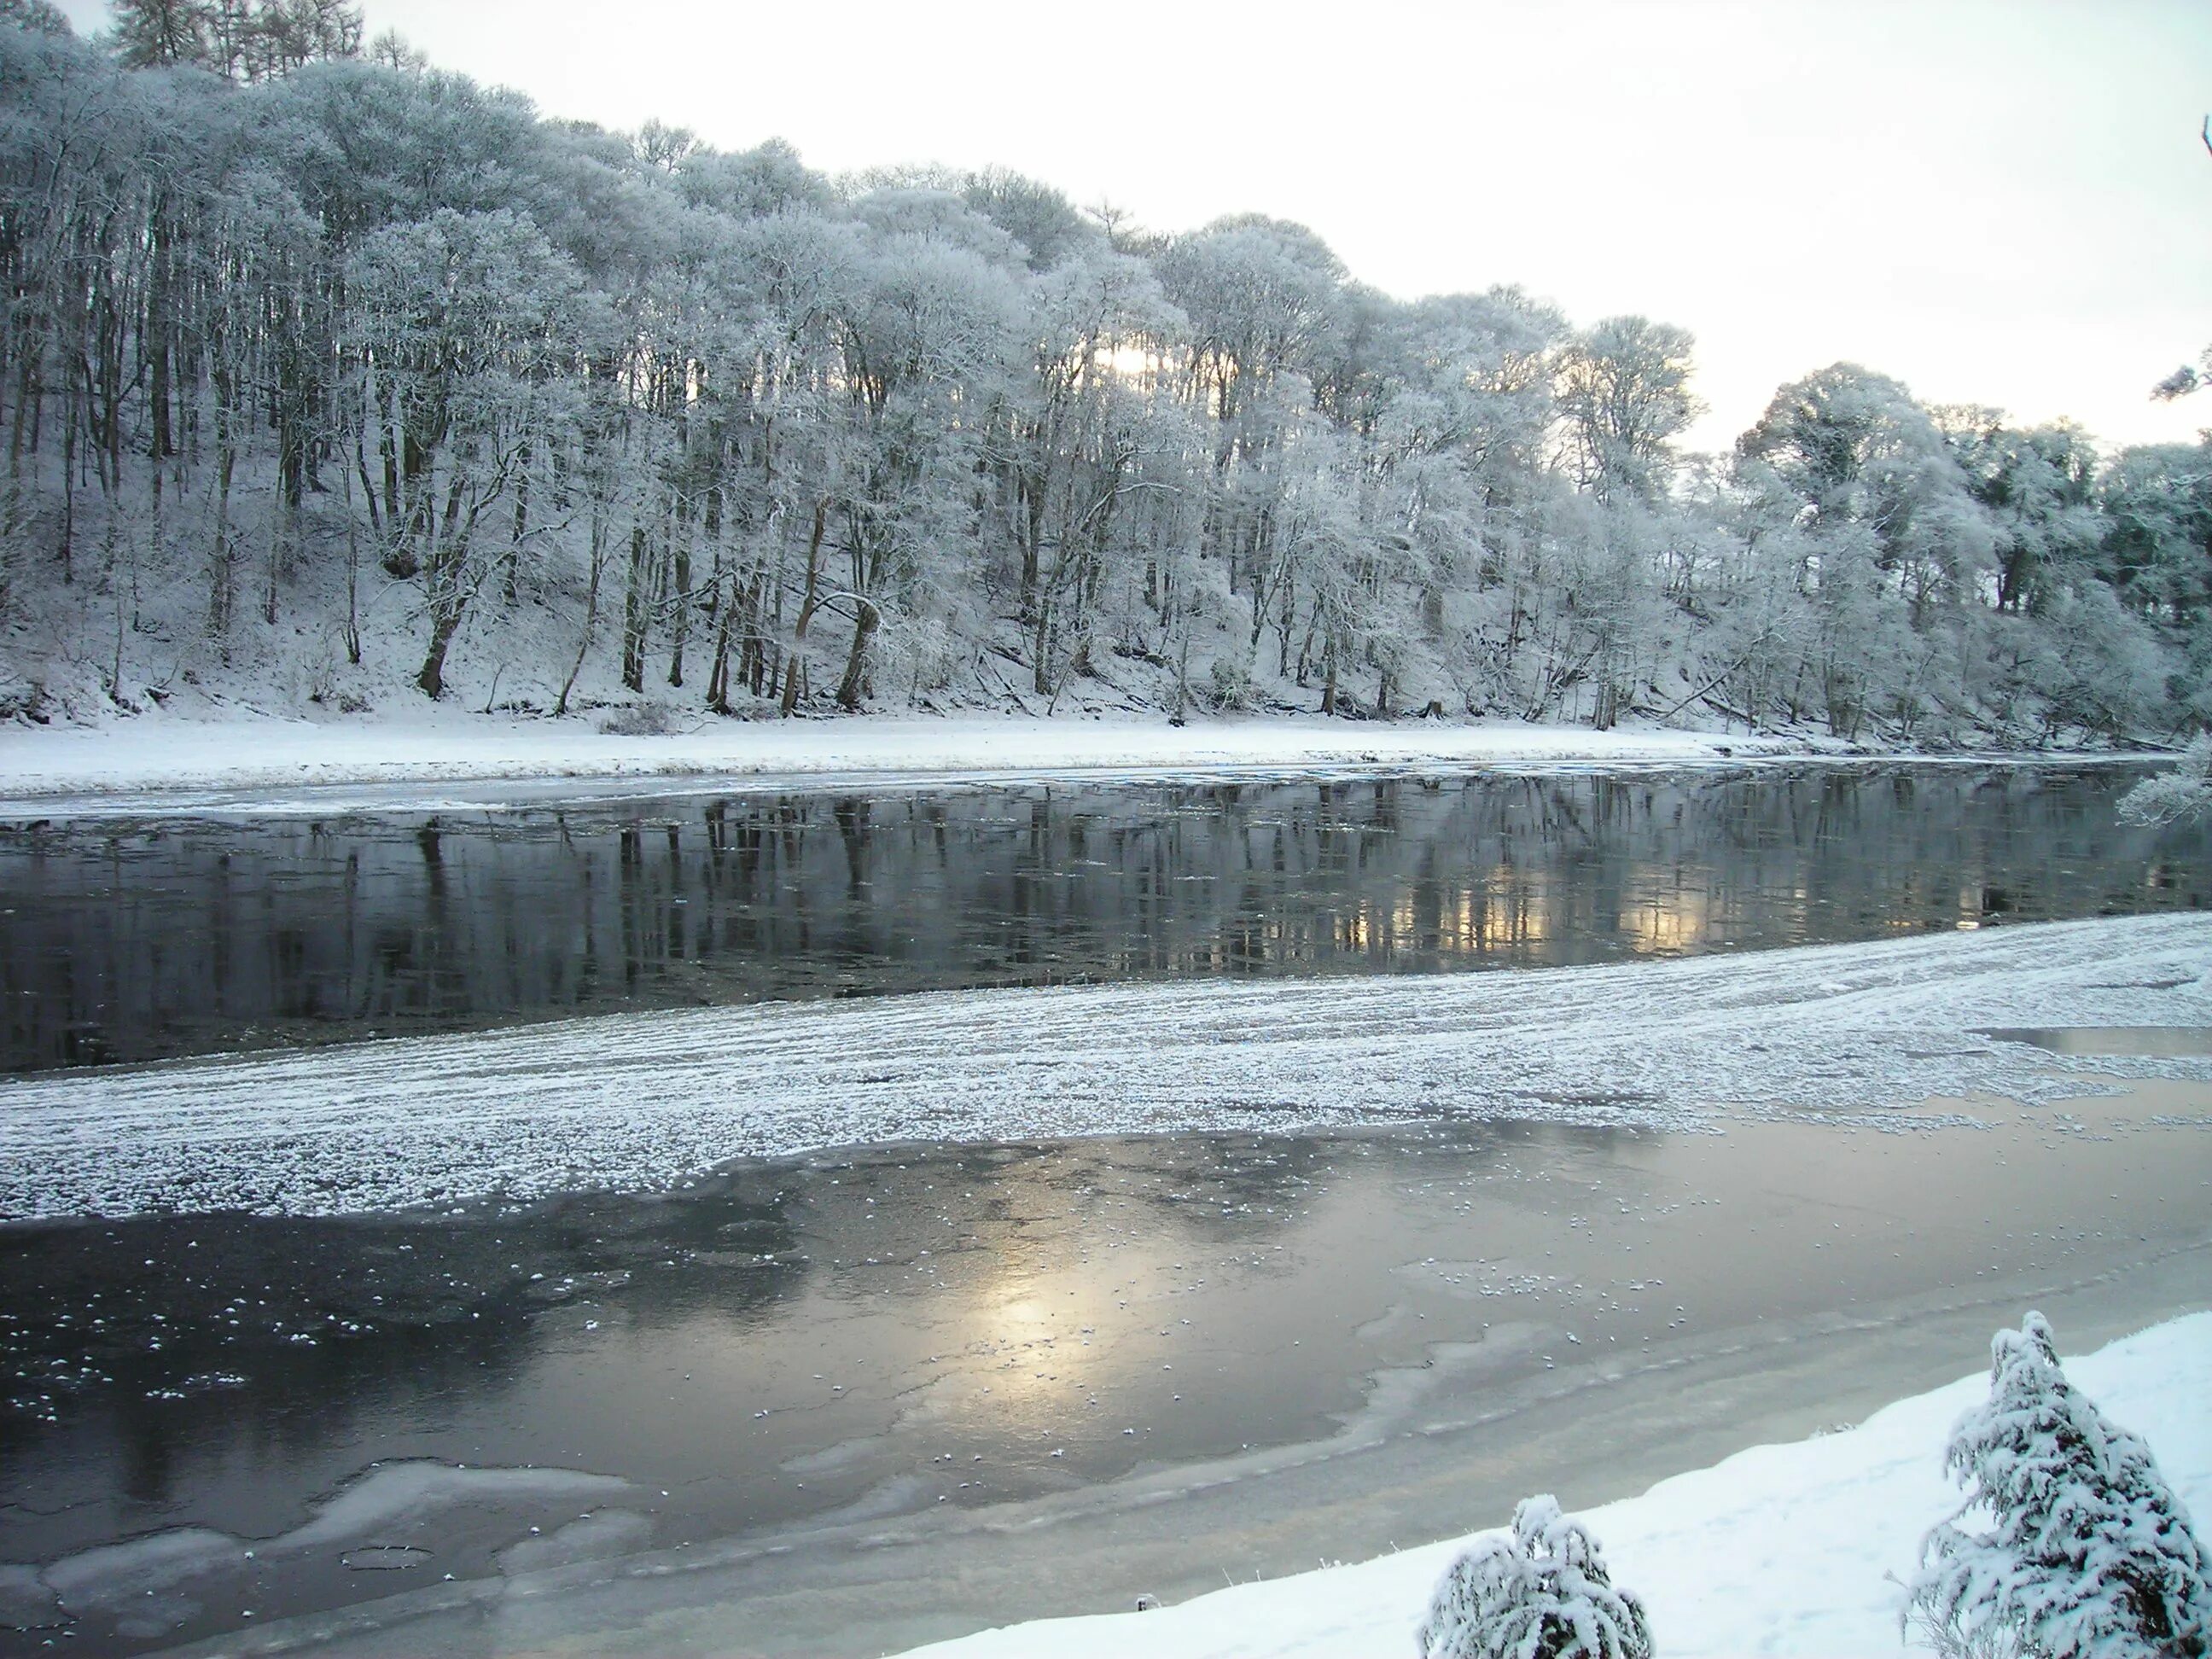 Замерзшая река (Frozen River) 2008. Радоновые озера зима. Замерзшая река зимой. Вода в реке замерзла